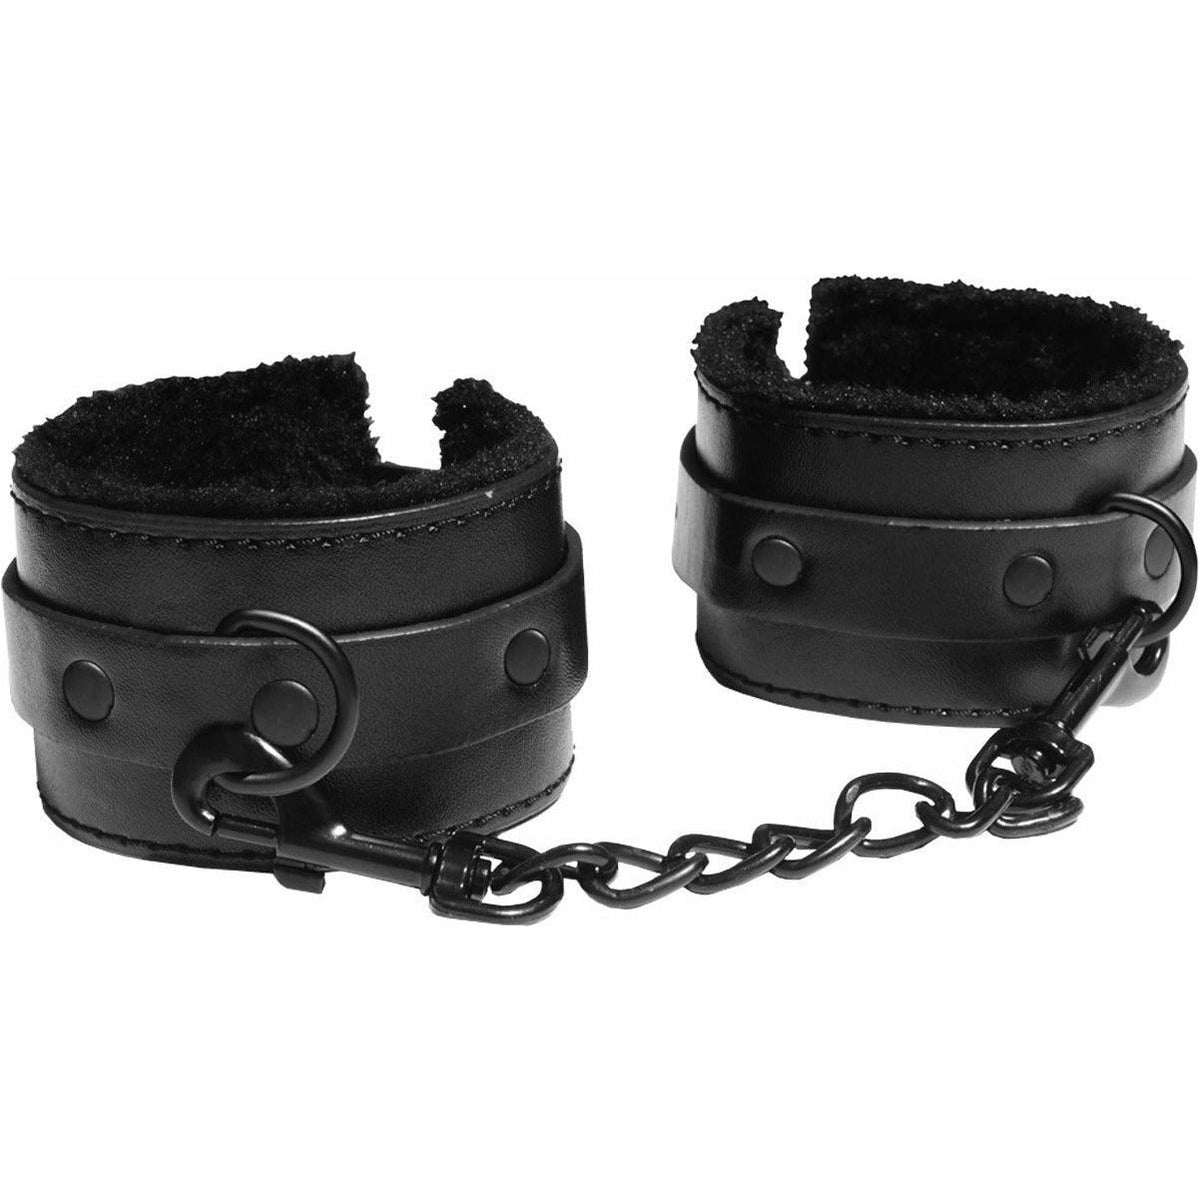 Sportsheets Sex &amp; Mischief - Shadow Fur Handcuffs - Black